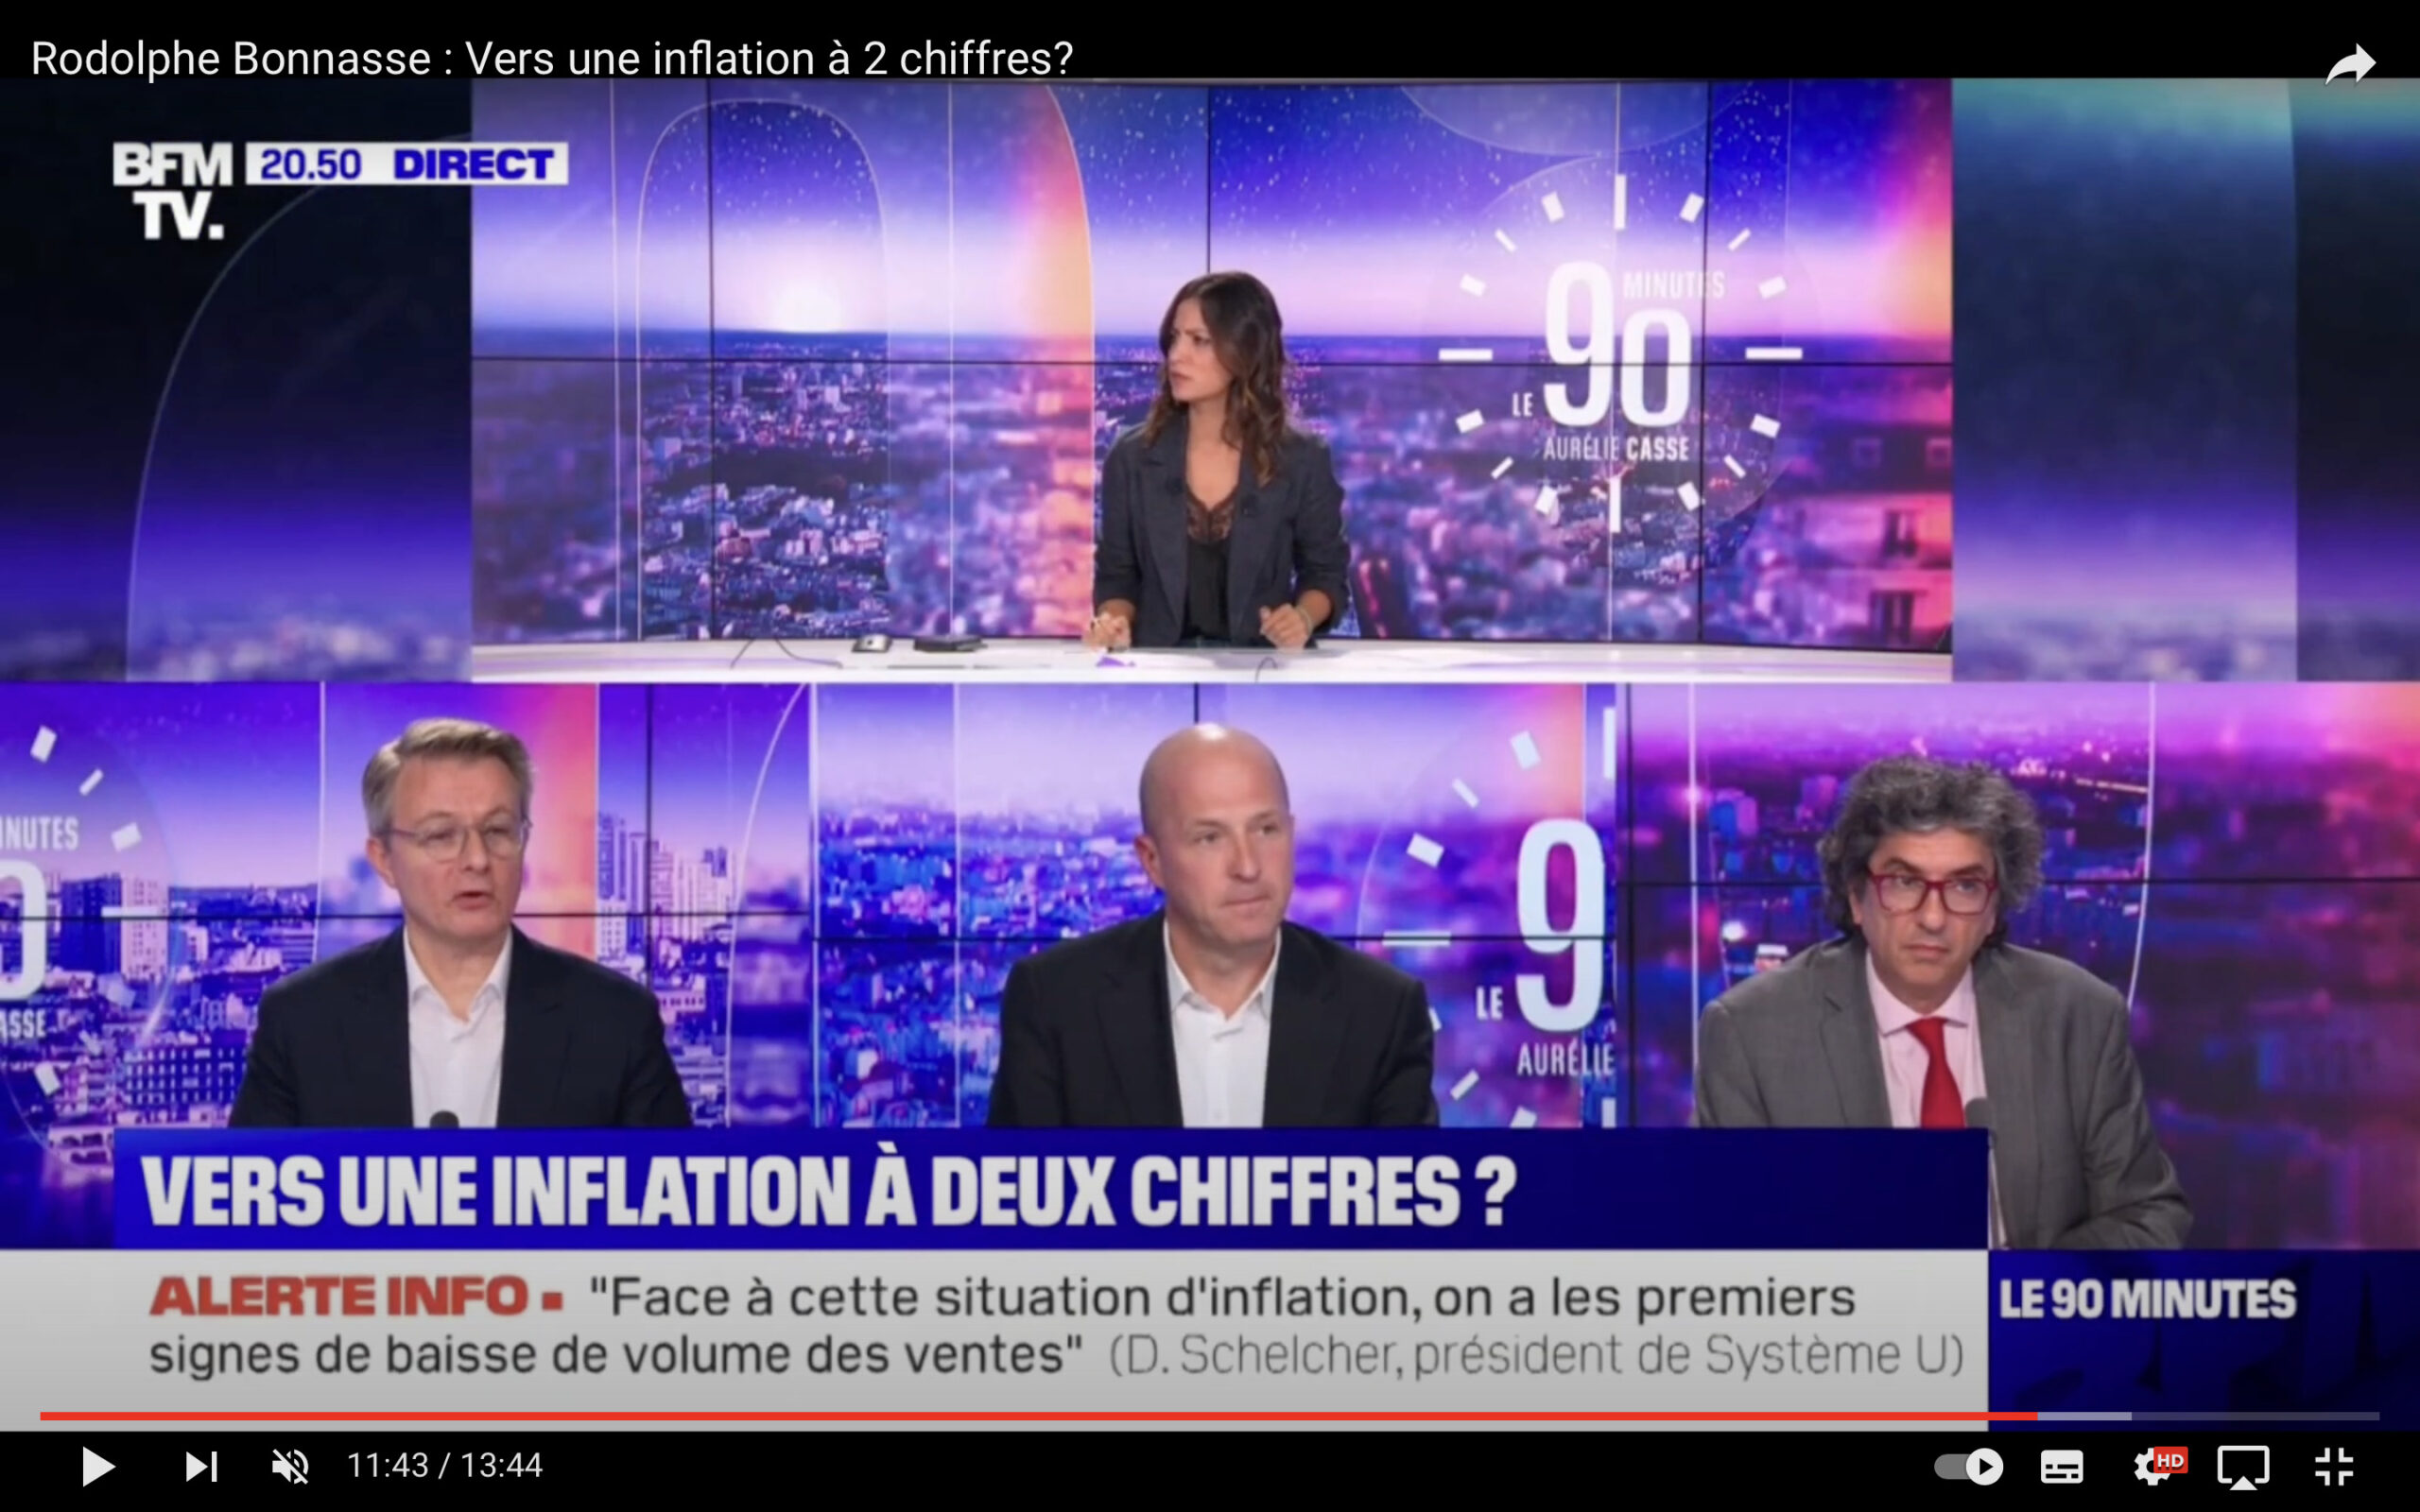 Vers une inflation à 2 chiffres? / BFM TV